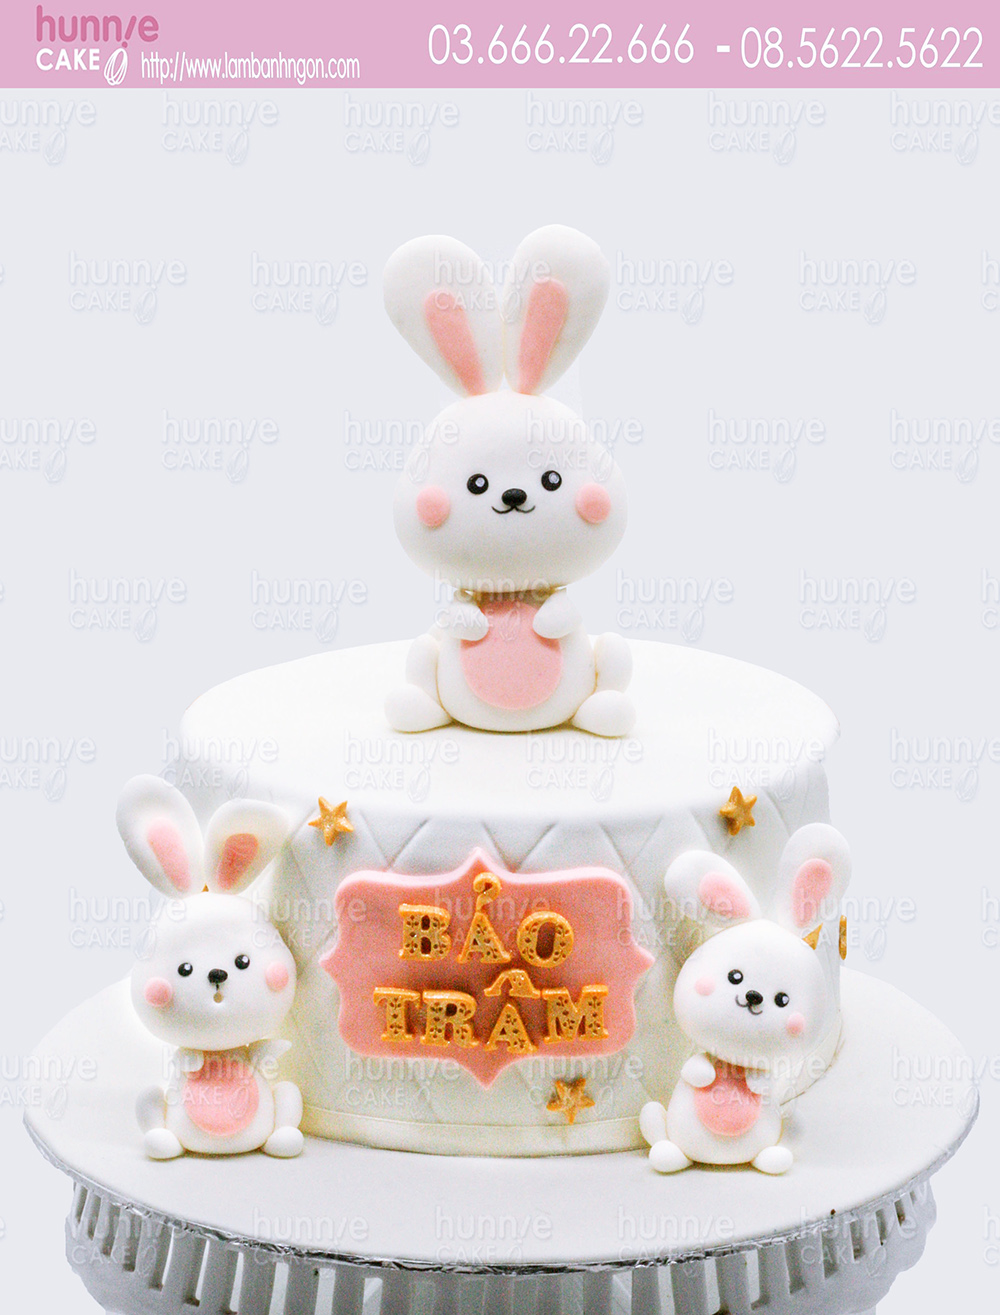 Bánh kem thôi nôi gấu và thỏ mừng sinh nhật bé dễ thương nhất 2020